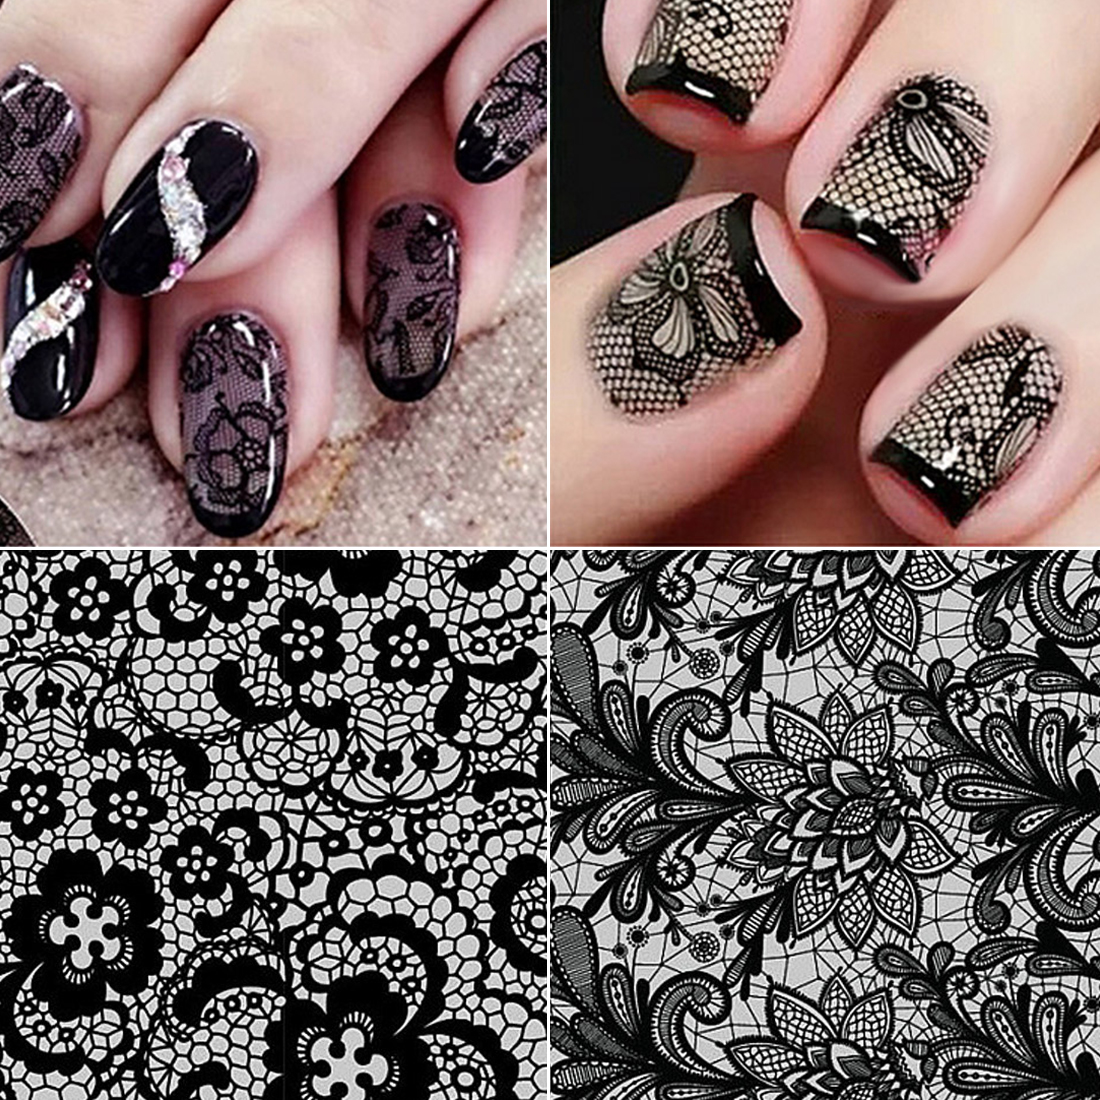 Кружево на ногтях: как сделать рисунок своими руками в домашних условиях